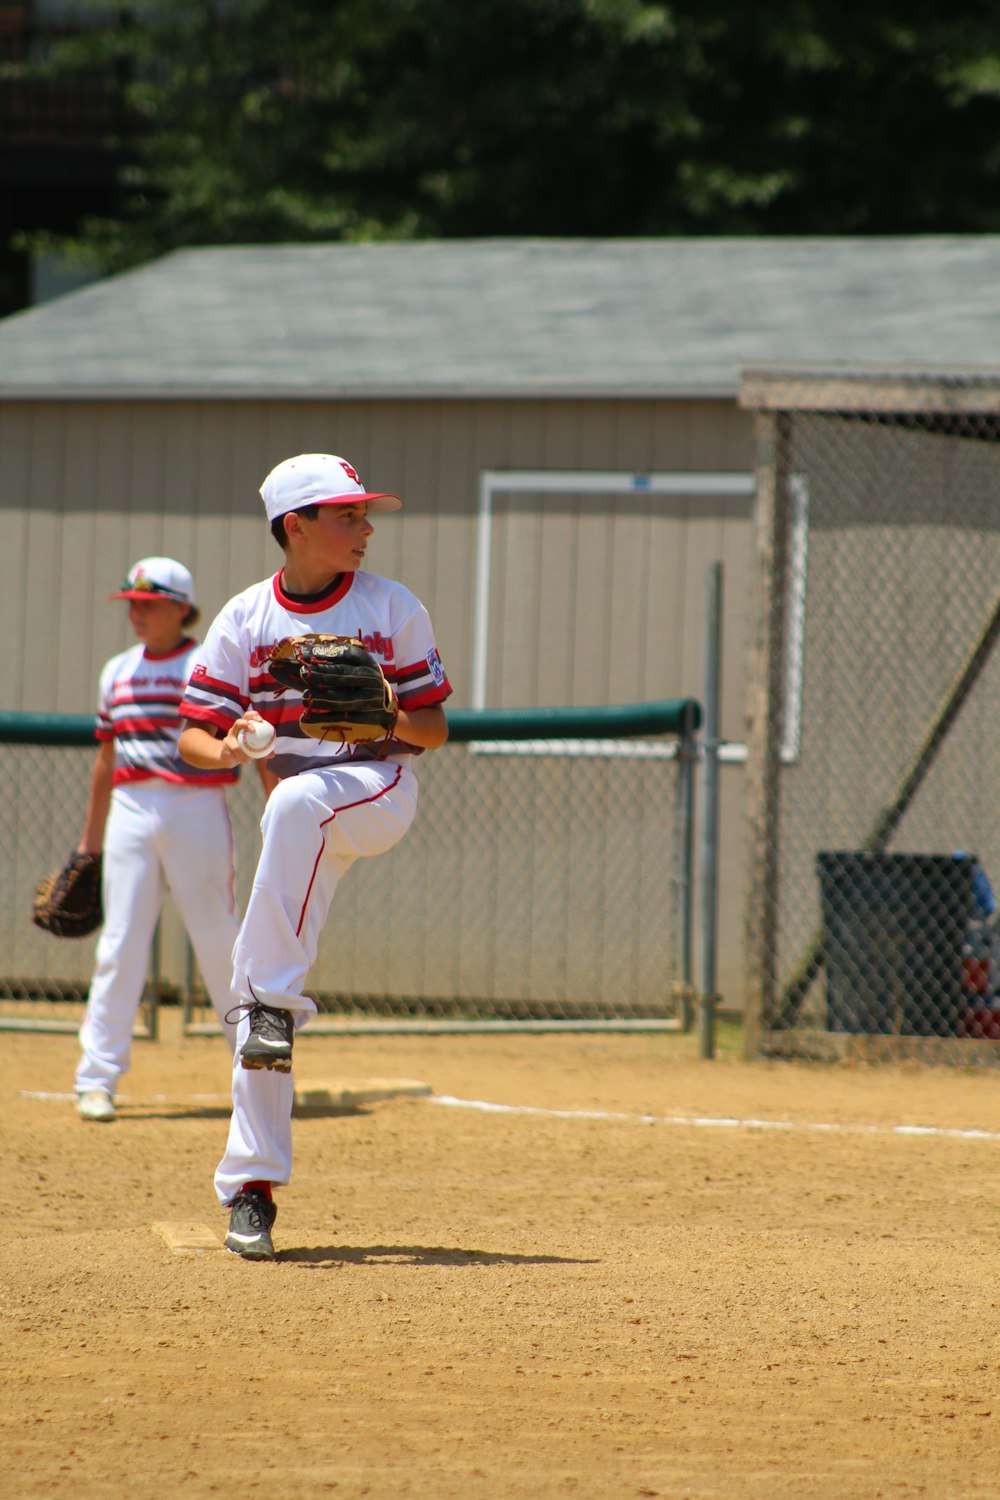 Hombre con pantalones blancos y casco de béisbol rojo